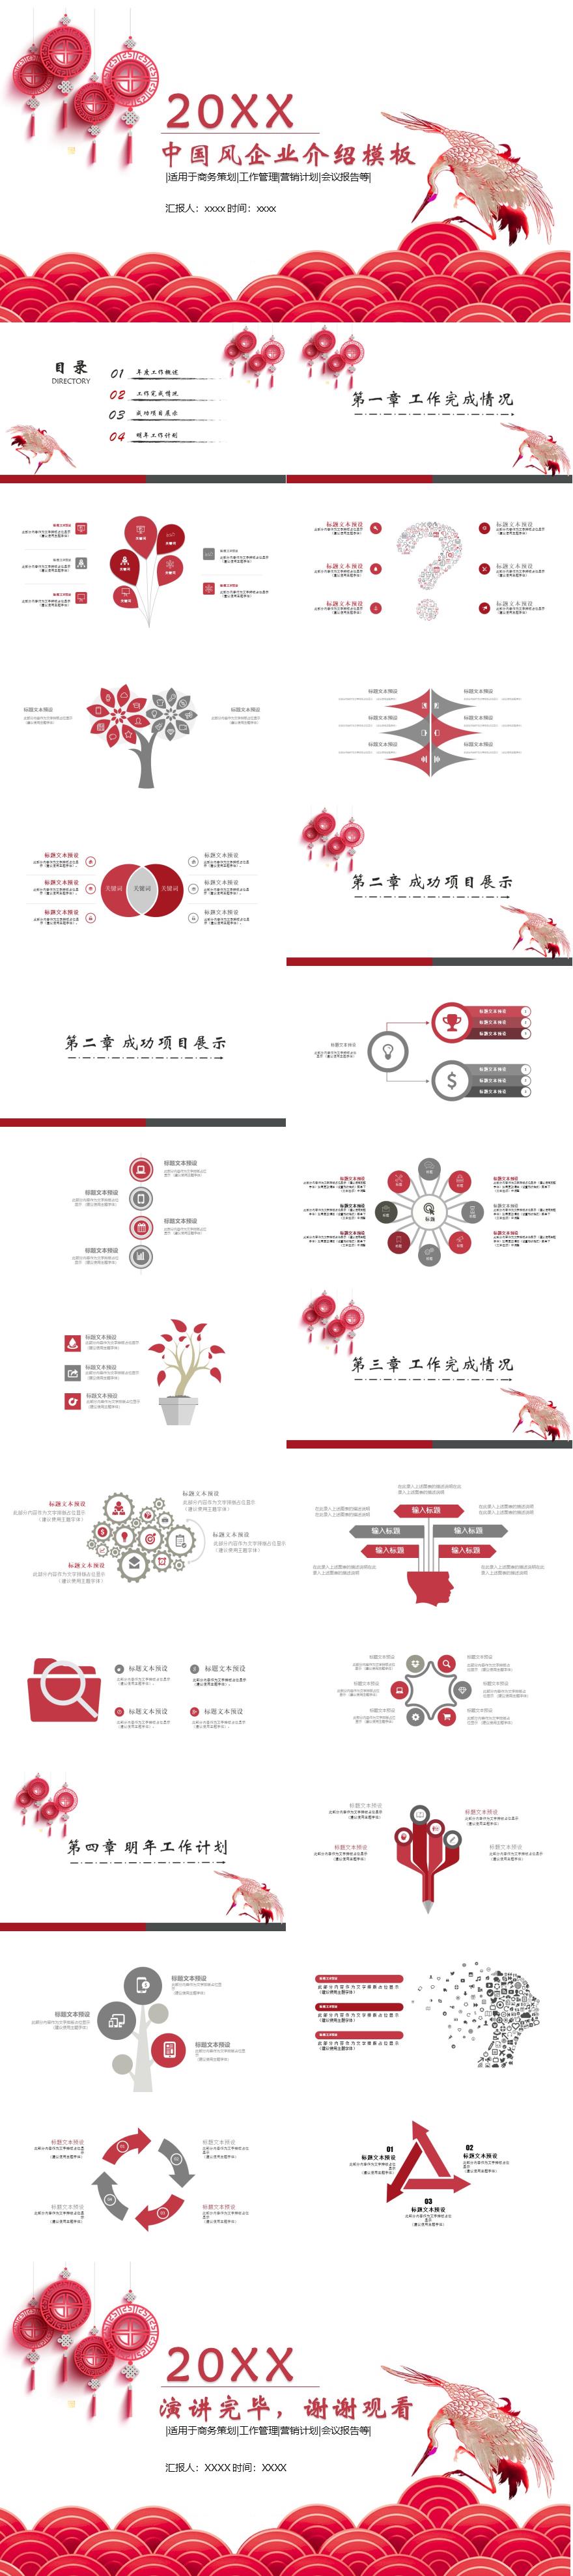 红色中国风中国结企业介绍PPT模板